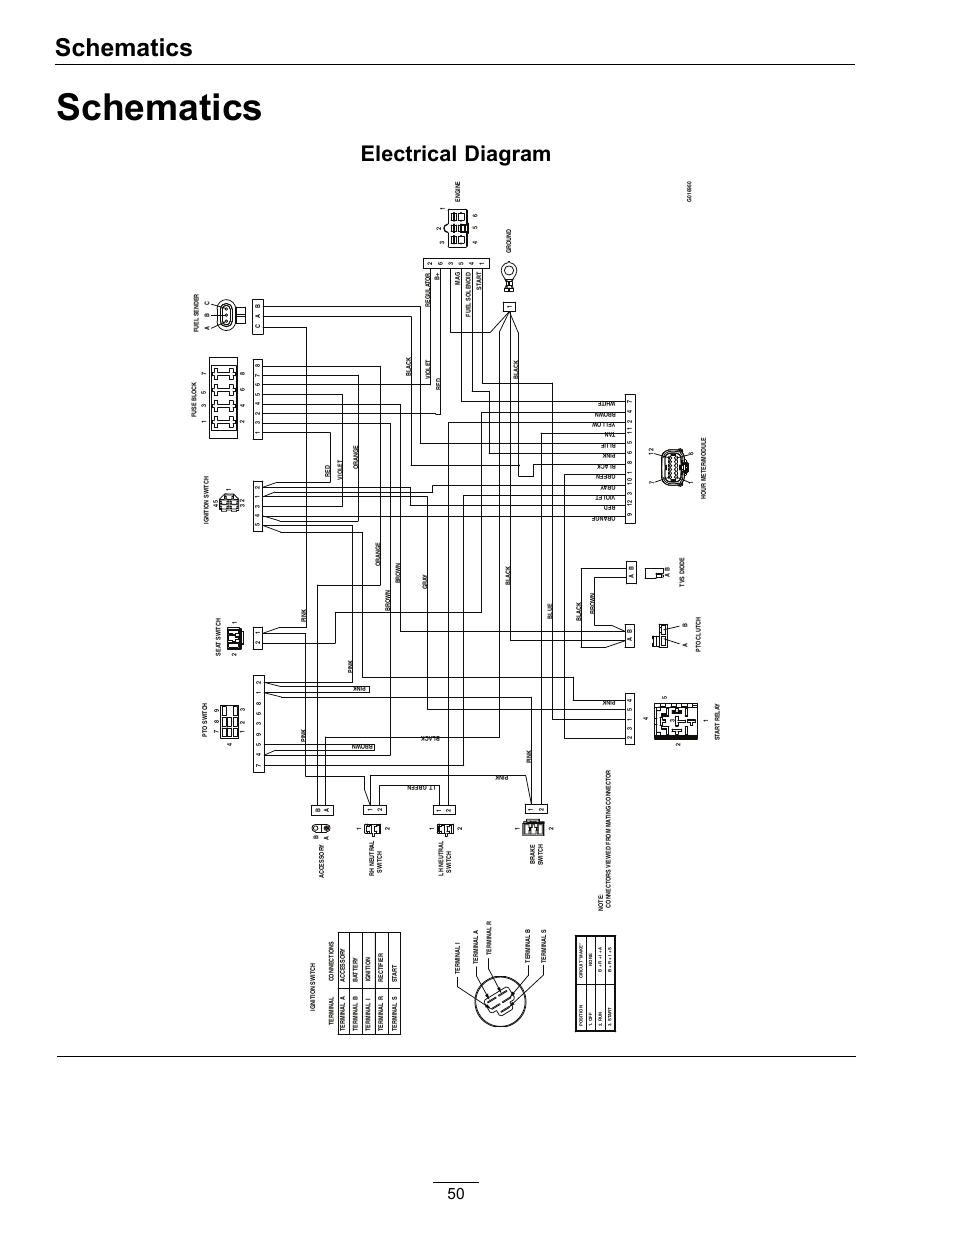 wiring dishwasher and garbage disposal diagram